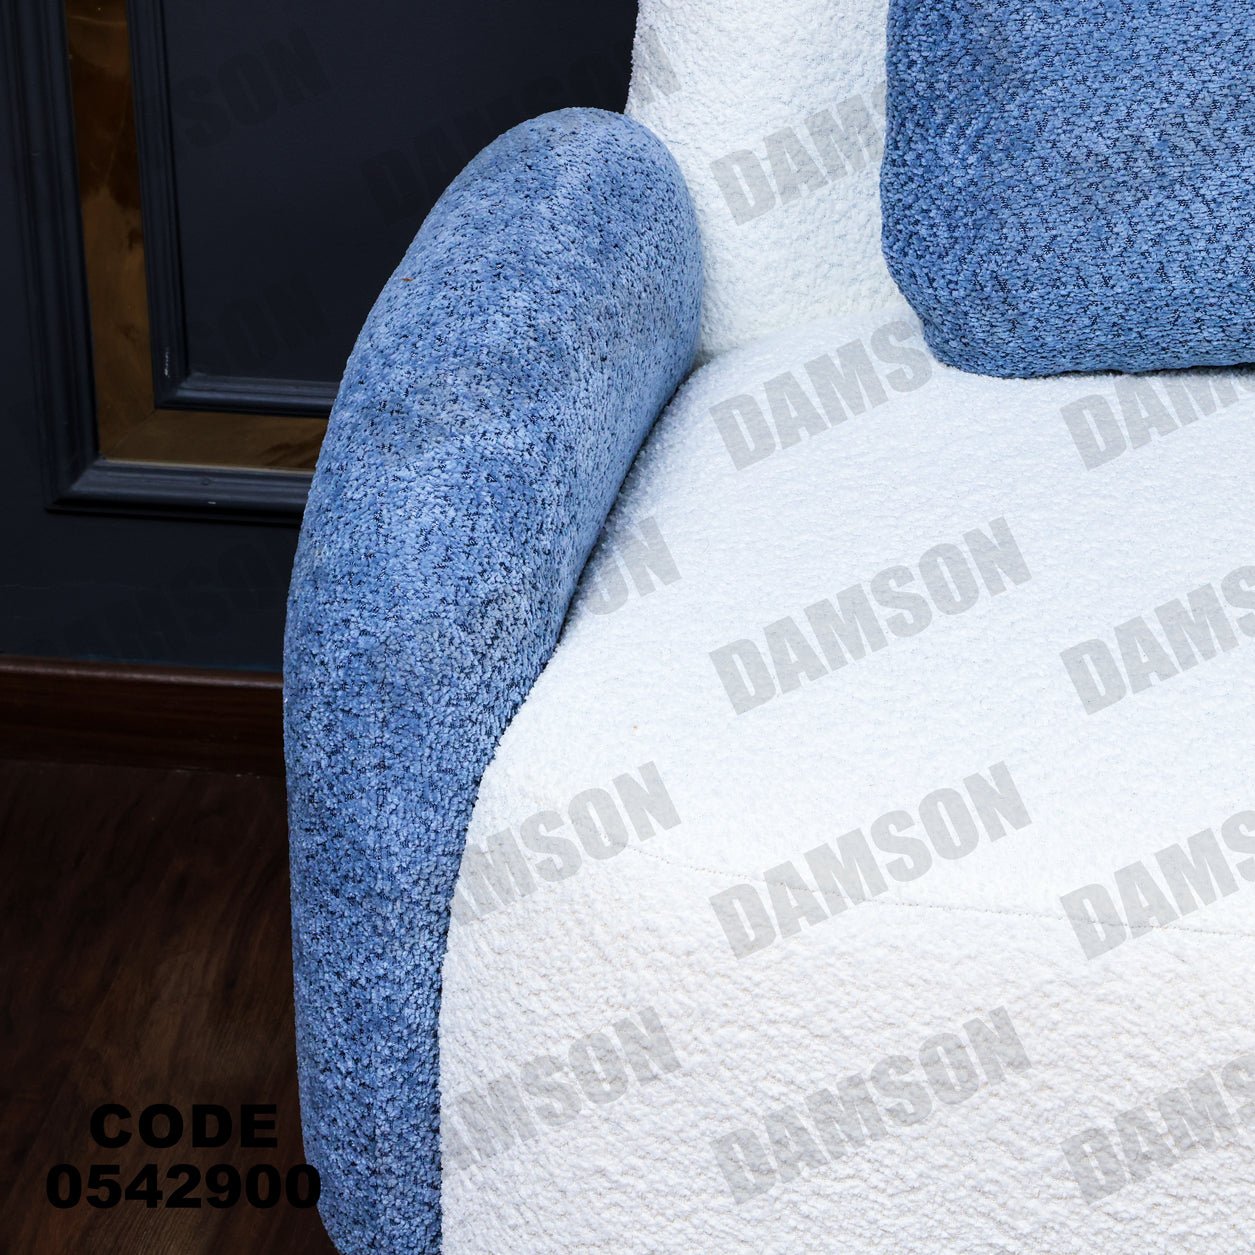 فوتية 2-429 - Damson Furnitureفوتية 2-429